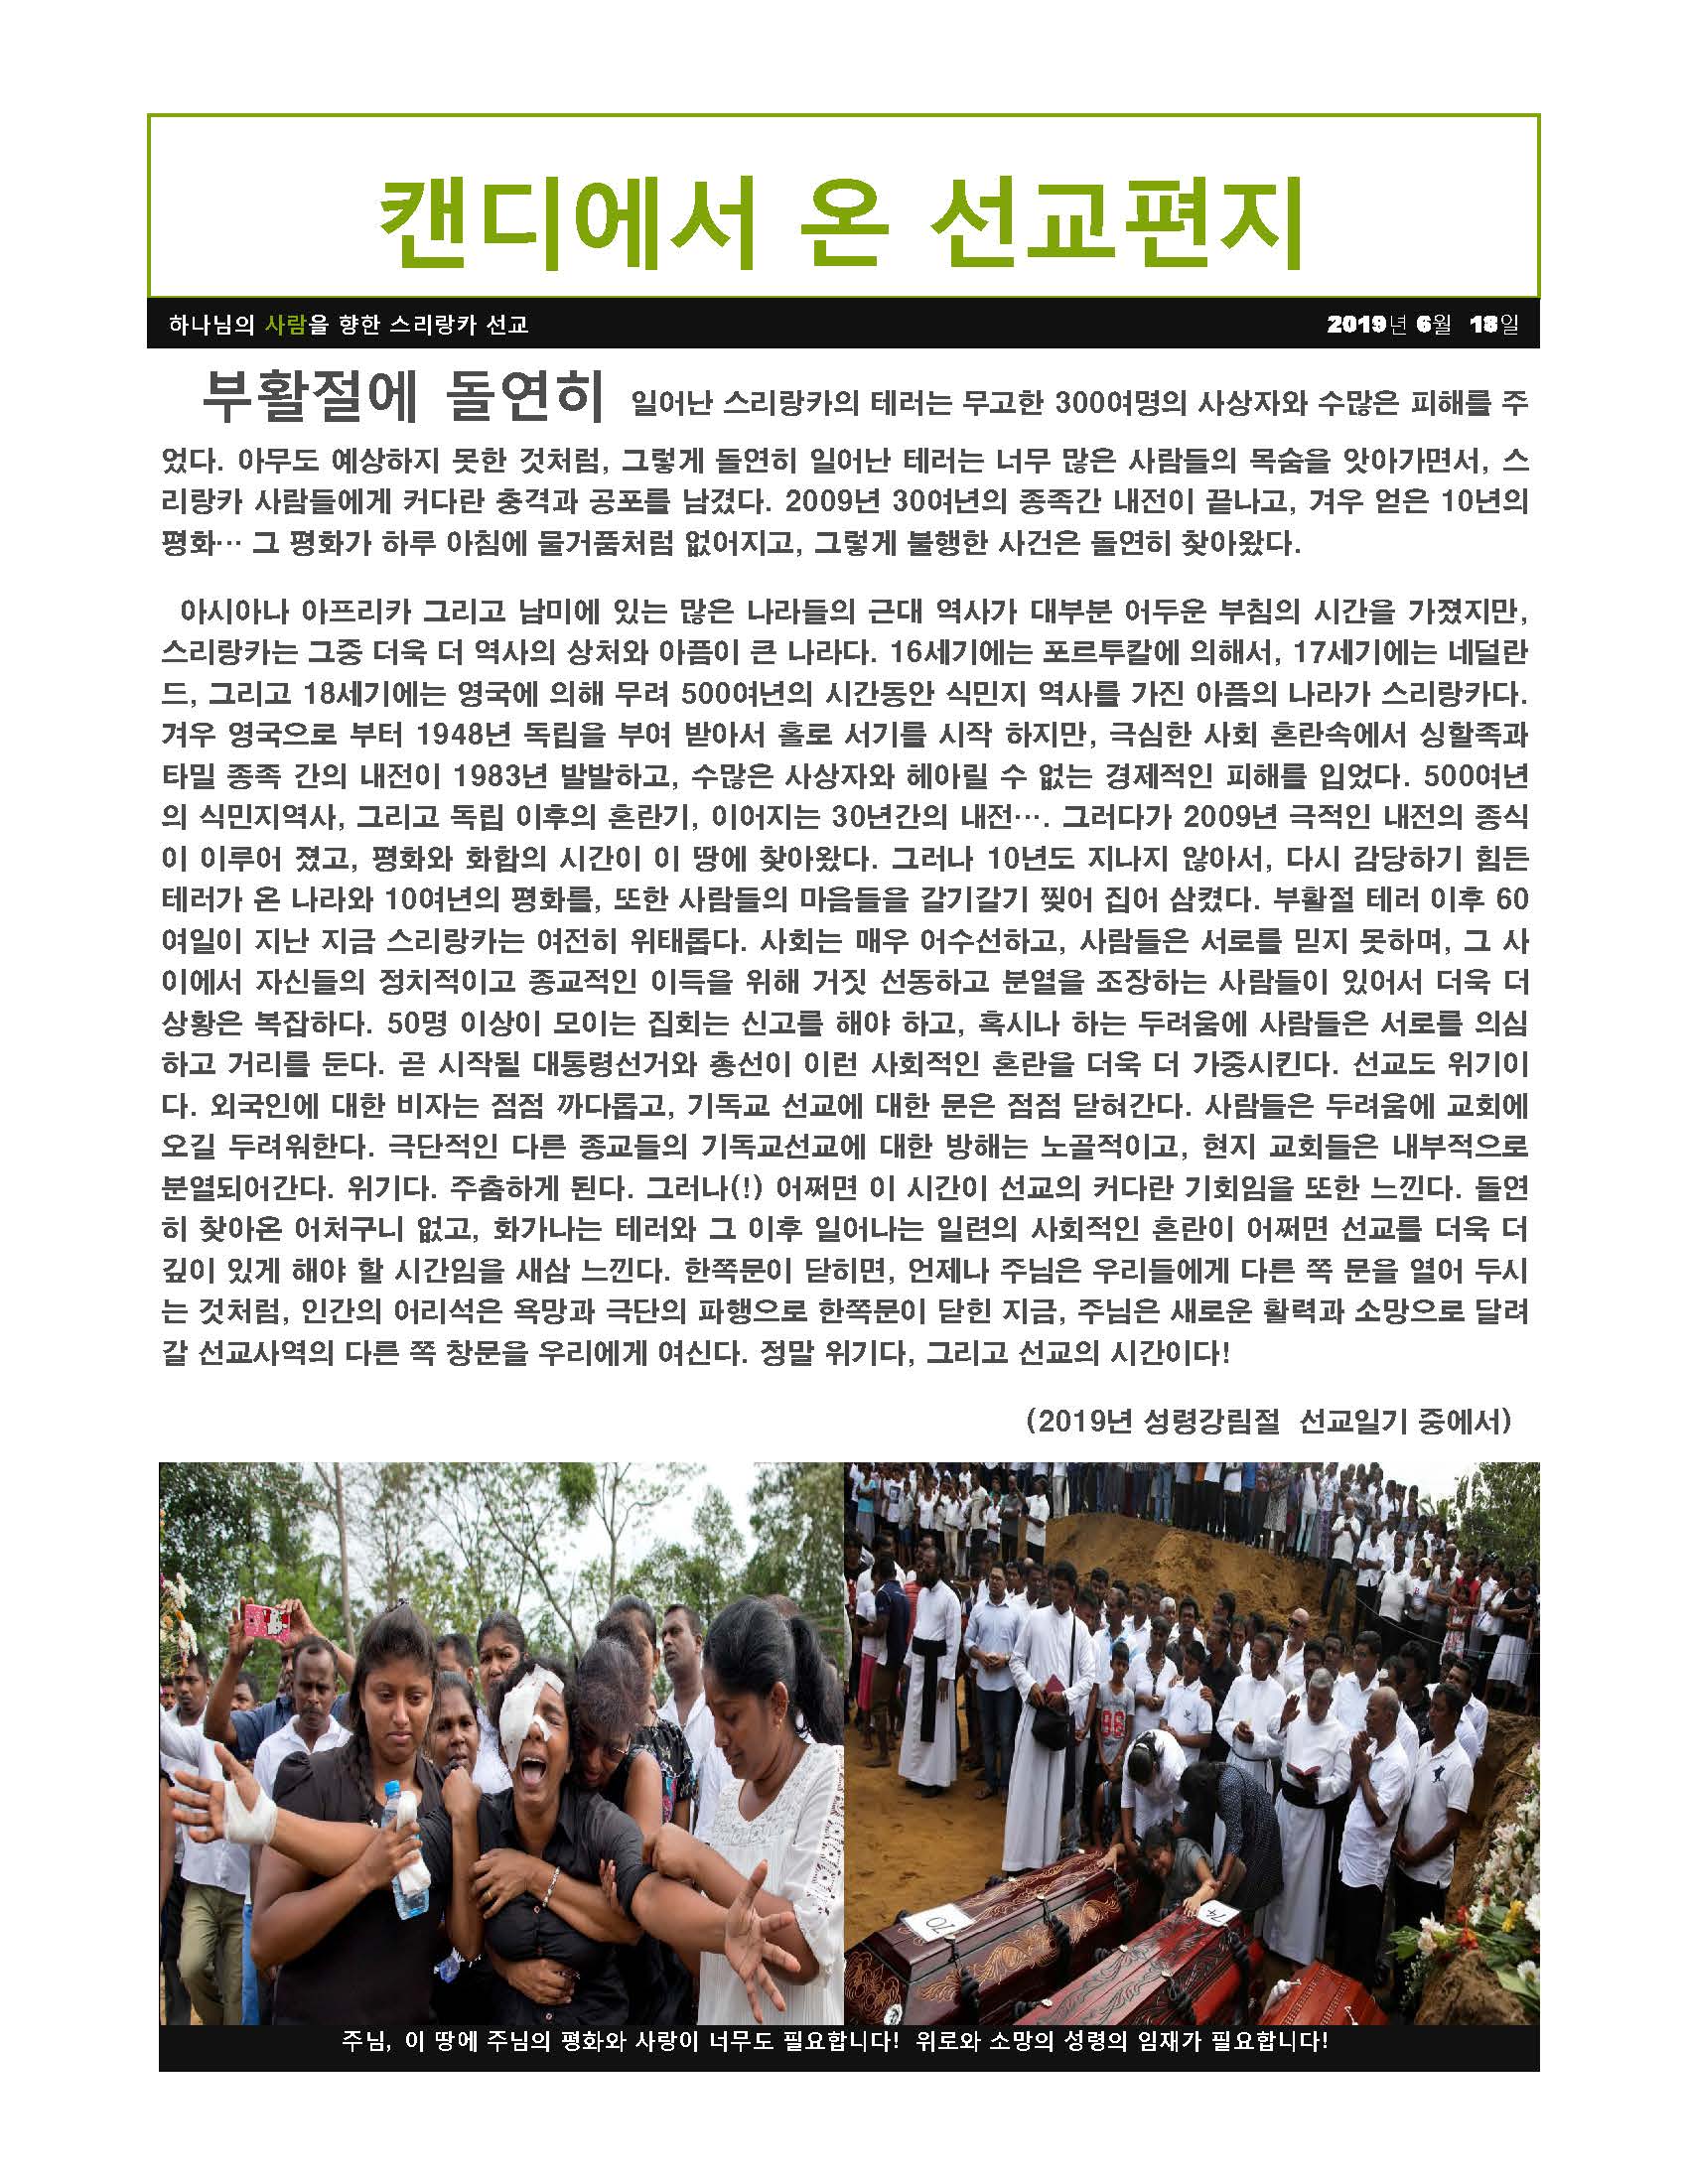 스리랑카선교편지(하웅원선교사,2019년6월)_Page_1.jpg